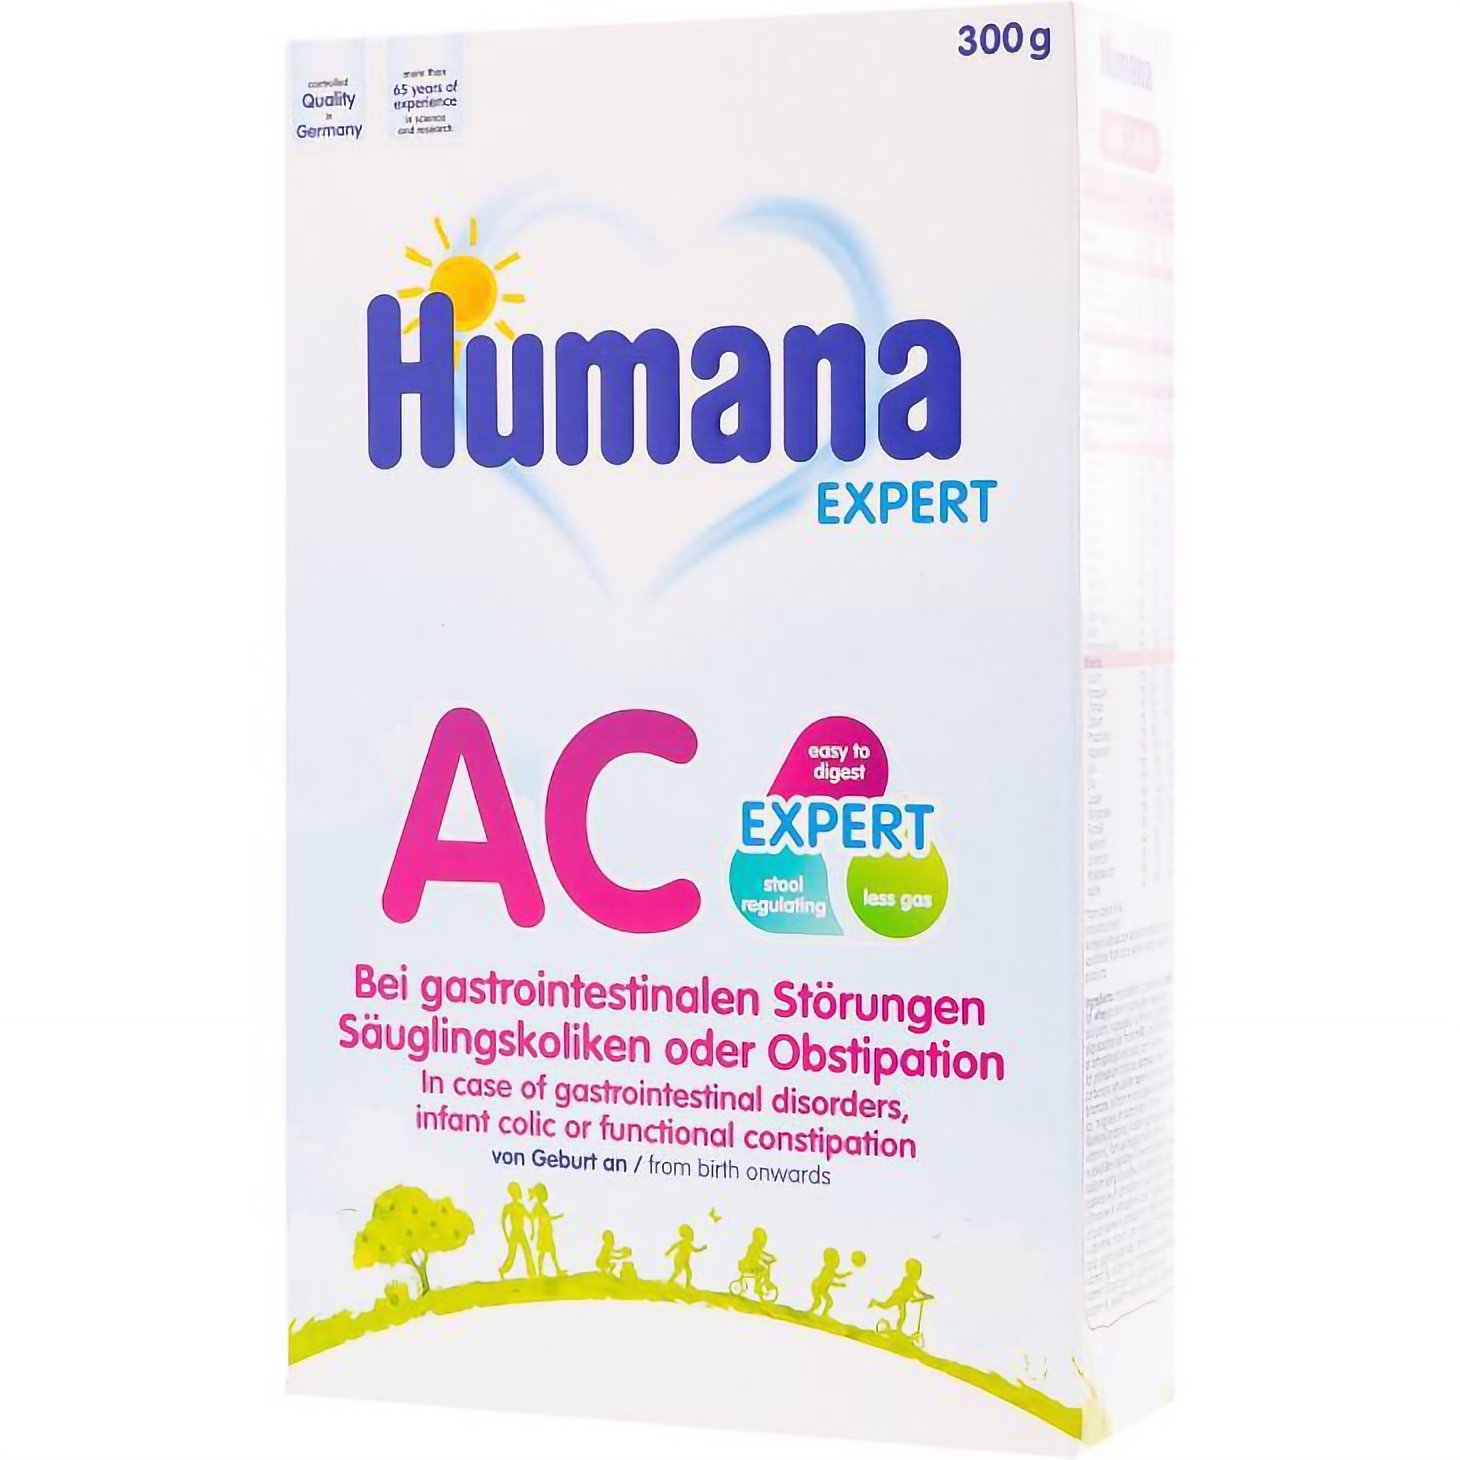 Суха молочна суміш Humana AntiColik c пребіотиками, 300 г - фото 1